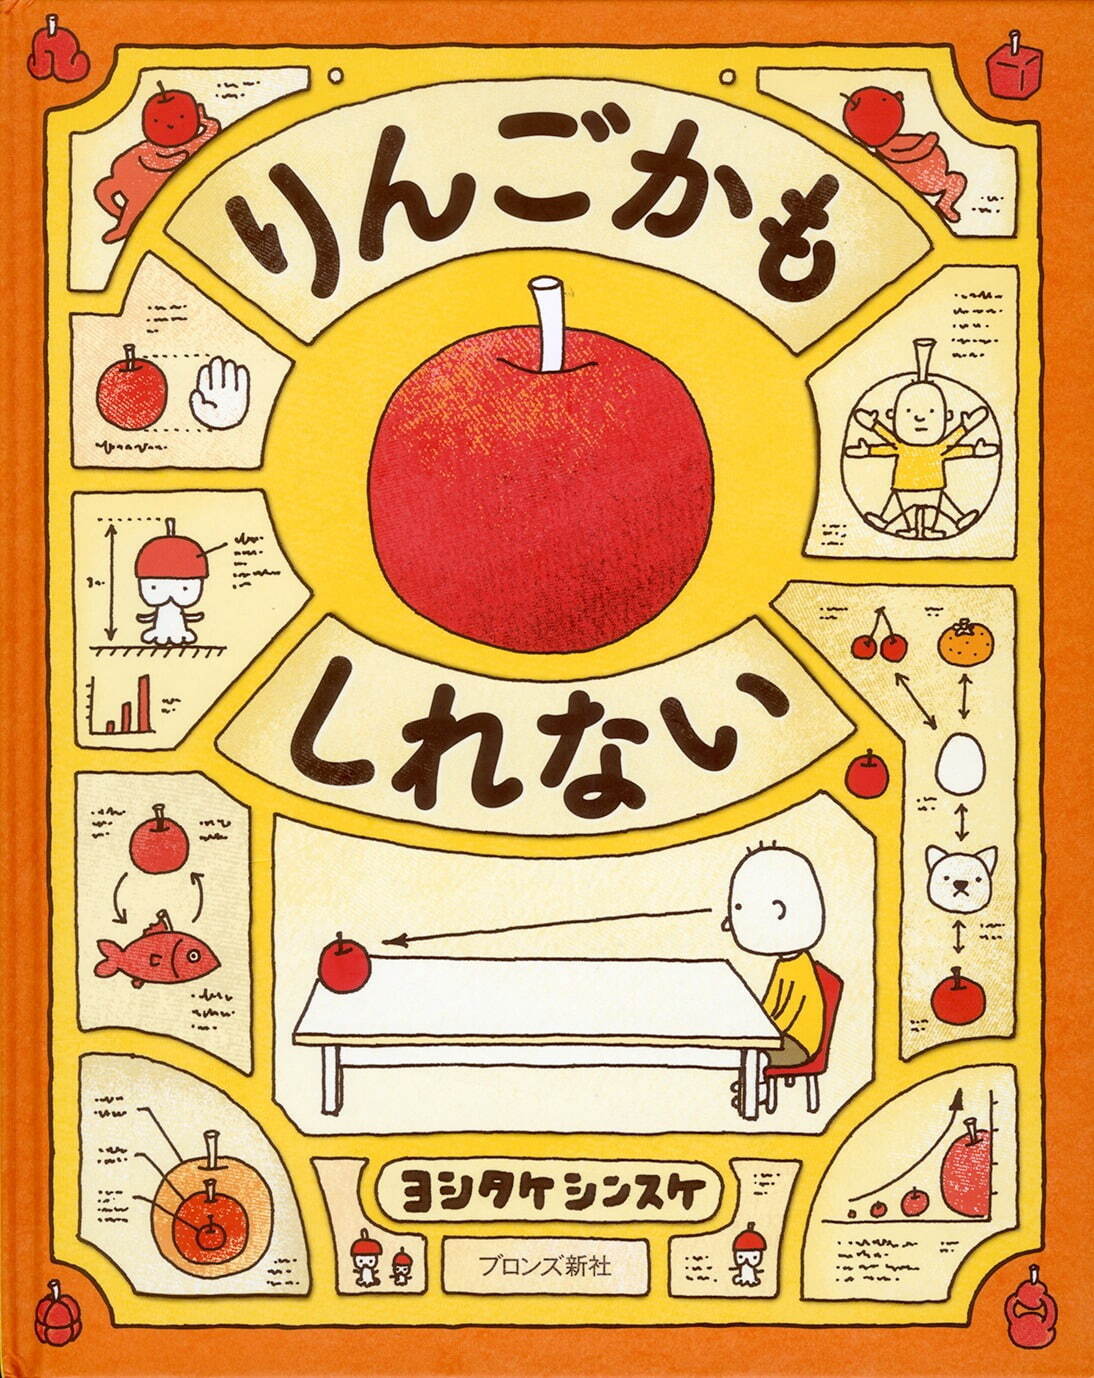 『りんごかもしれない』ブロンズ新社 2013年